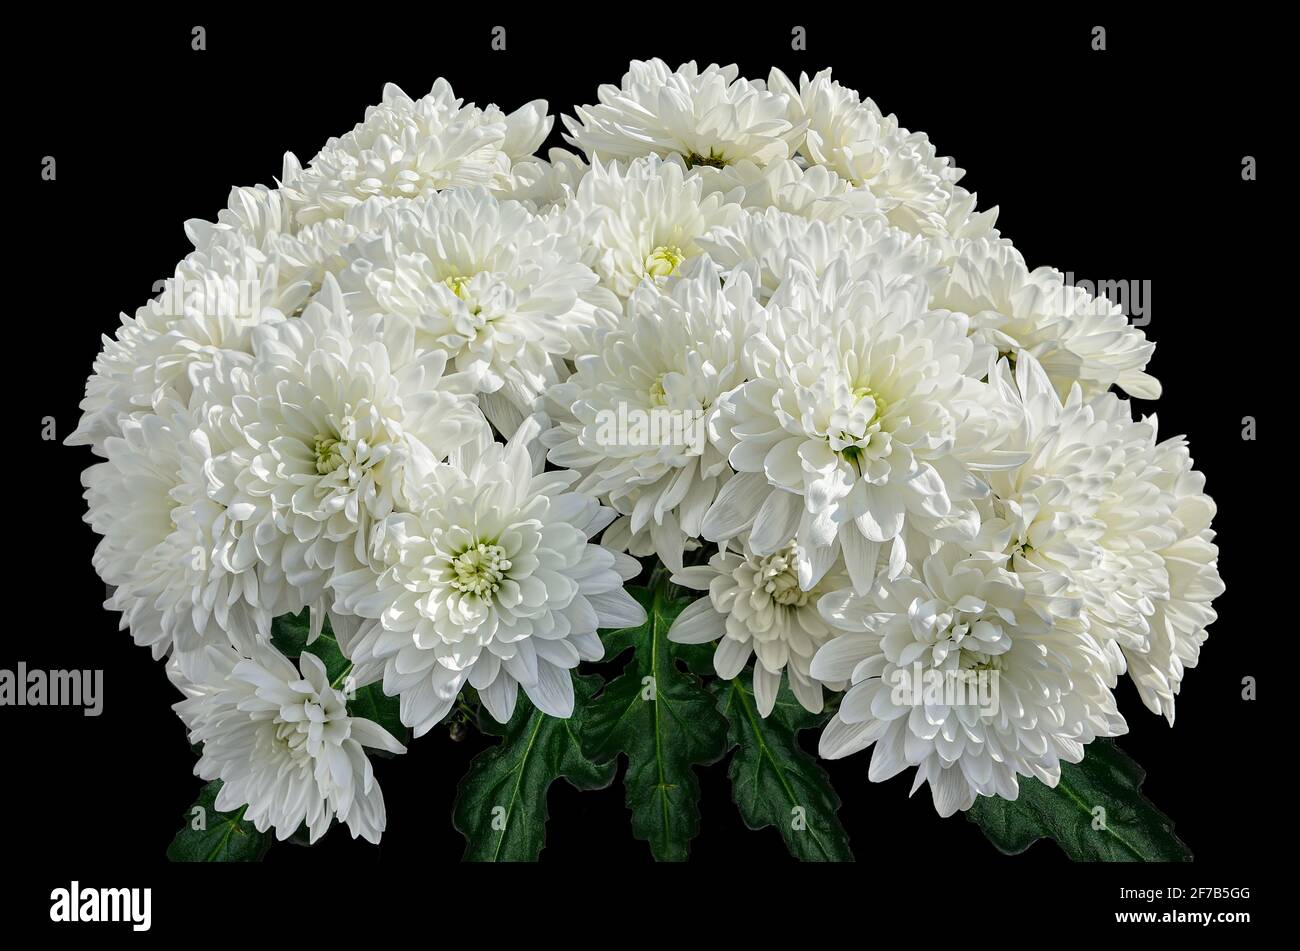 Bouquet von weißen Chrysanthemen Blumen auf schwarzem Hintergrund. Natürliche Blumenkulisse - Design für glückliche oder traurige Veranstaltung. Im Osten ist es ein Zeichen des Glücks Stockfoto